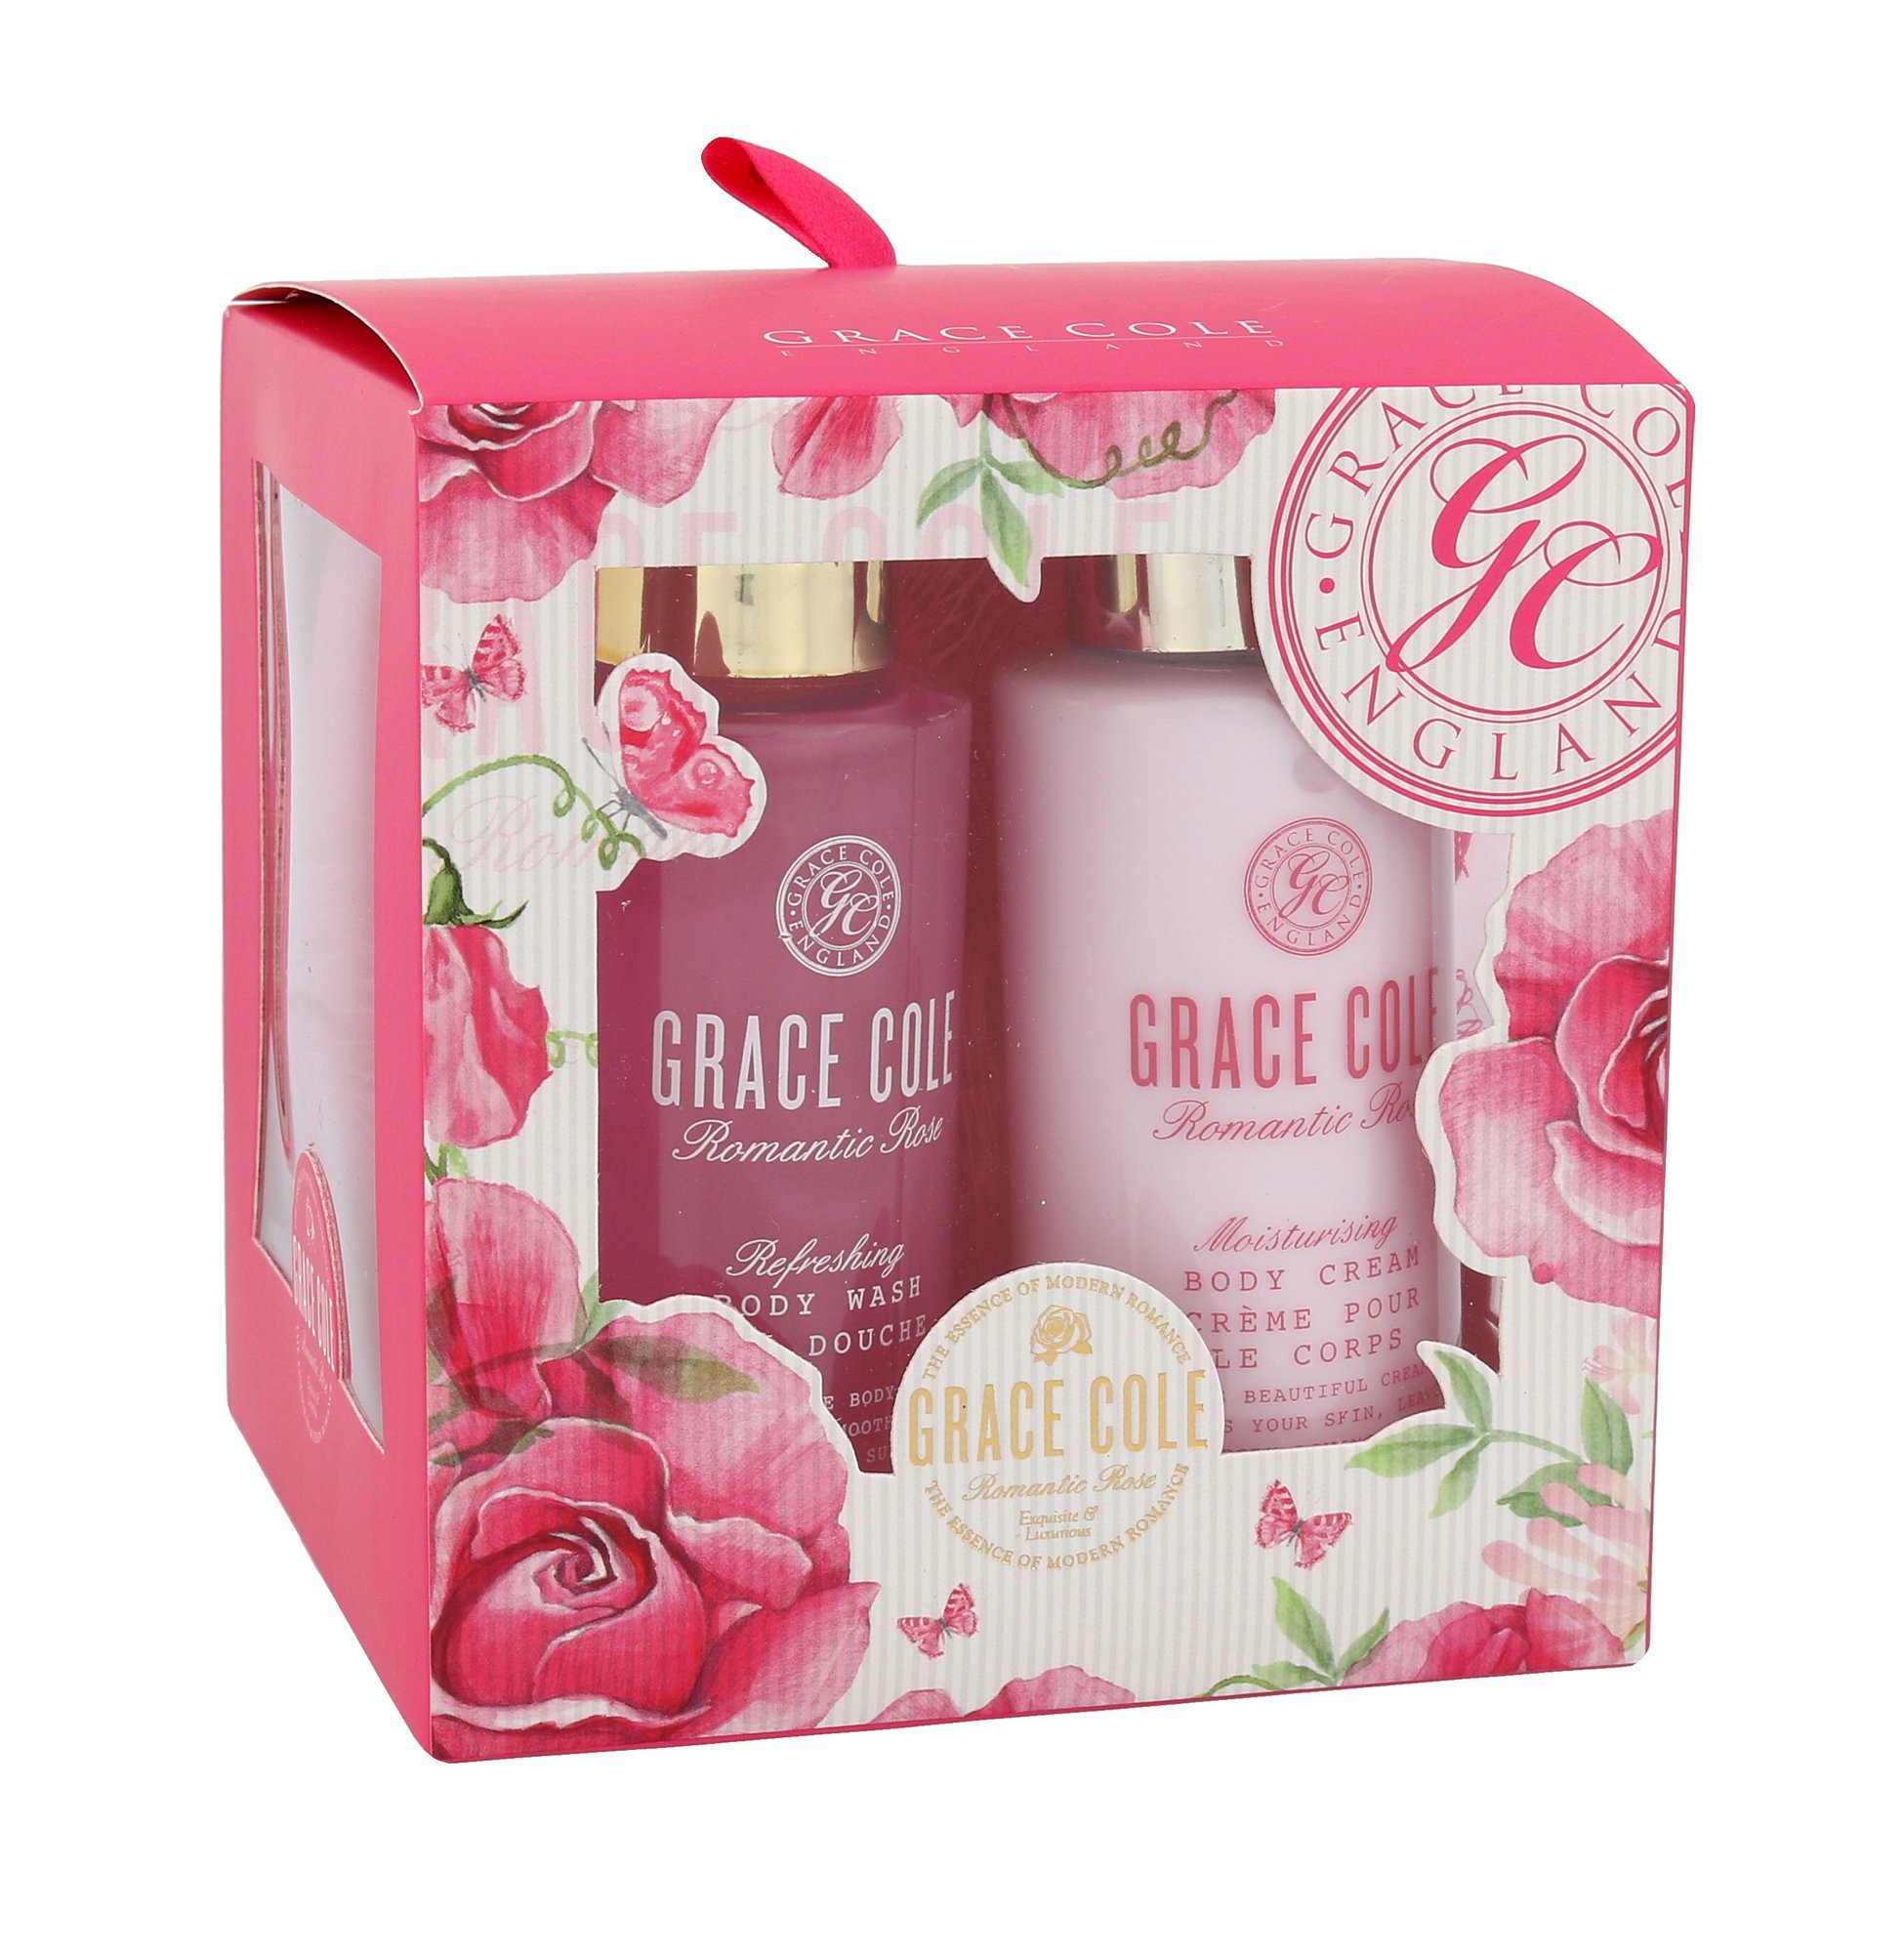 Grace Cole Romantic Rose Bath Kit